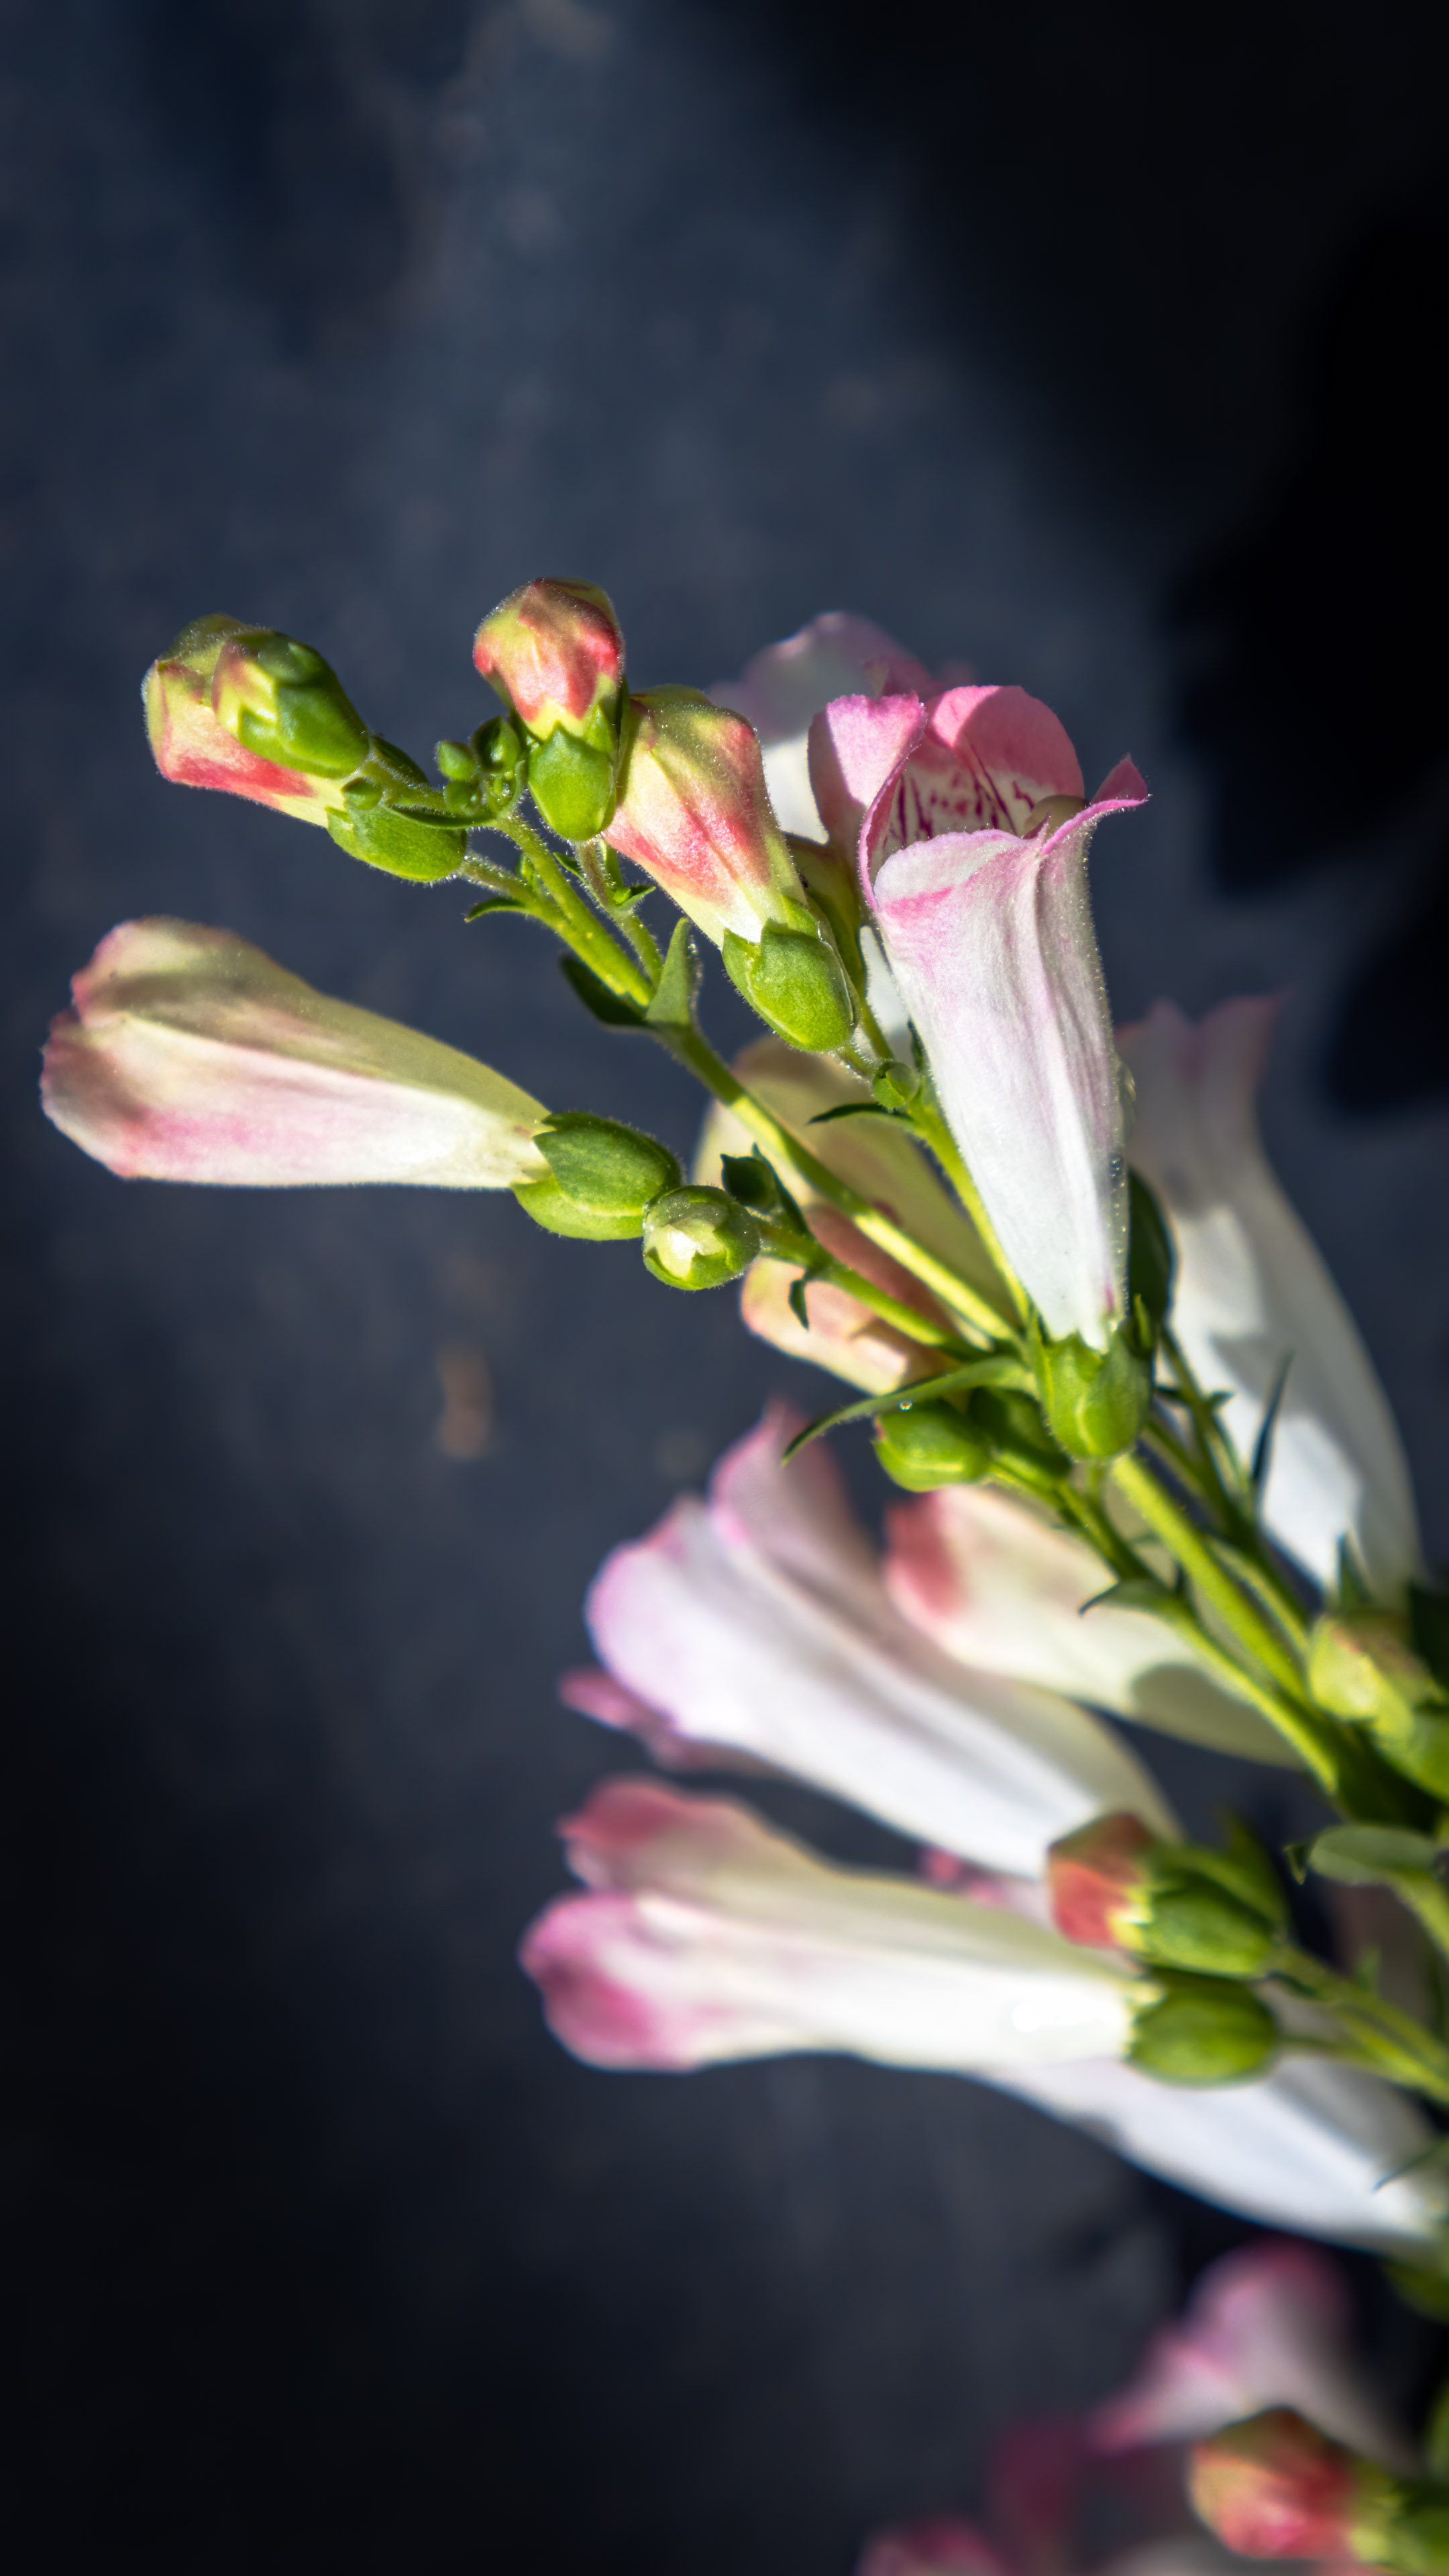 Embrassez le charme de notre fond d'écran de fleur rose pour iPhone, un design délicat et romantique qui ajoute une touche de féminité à votre appareil.